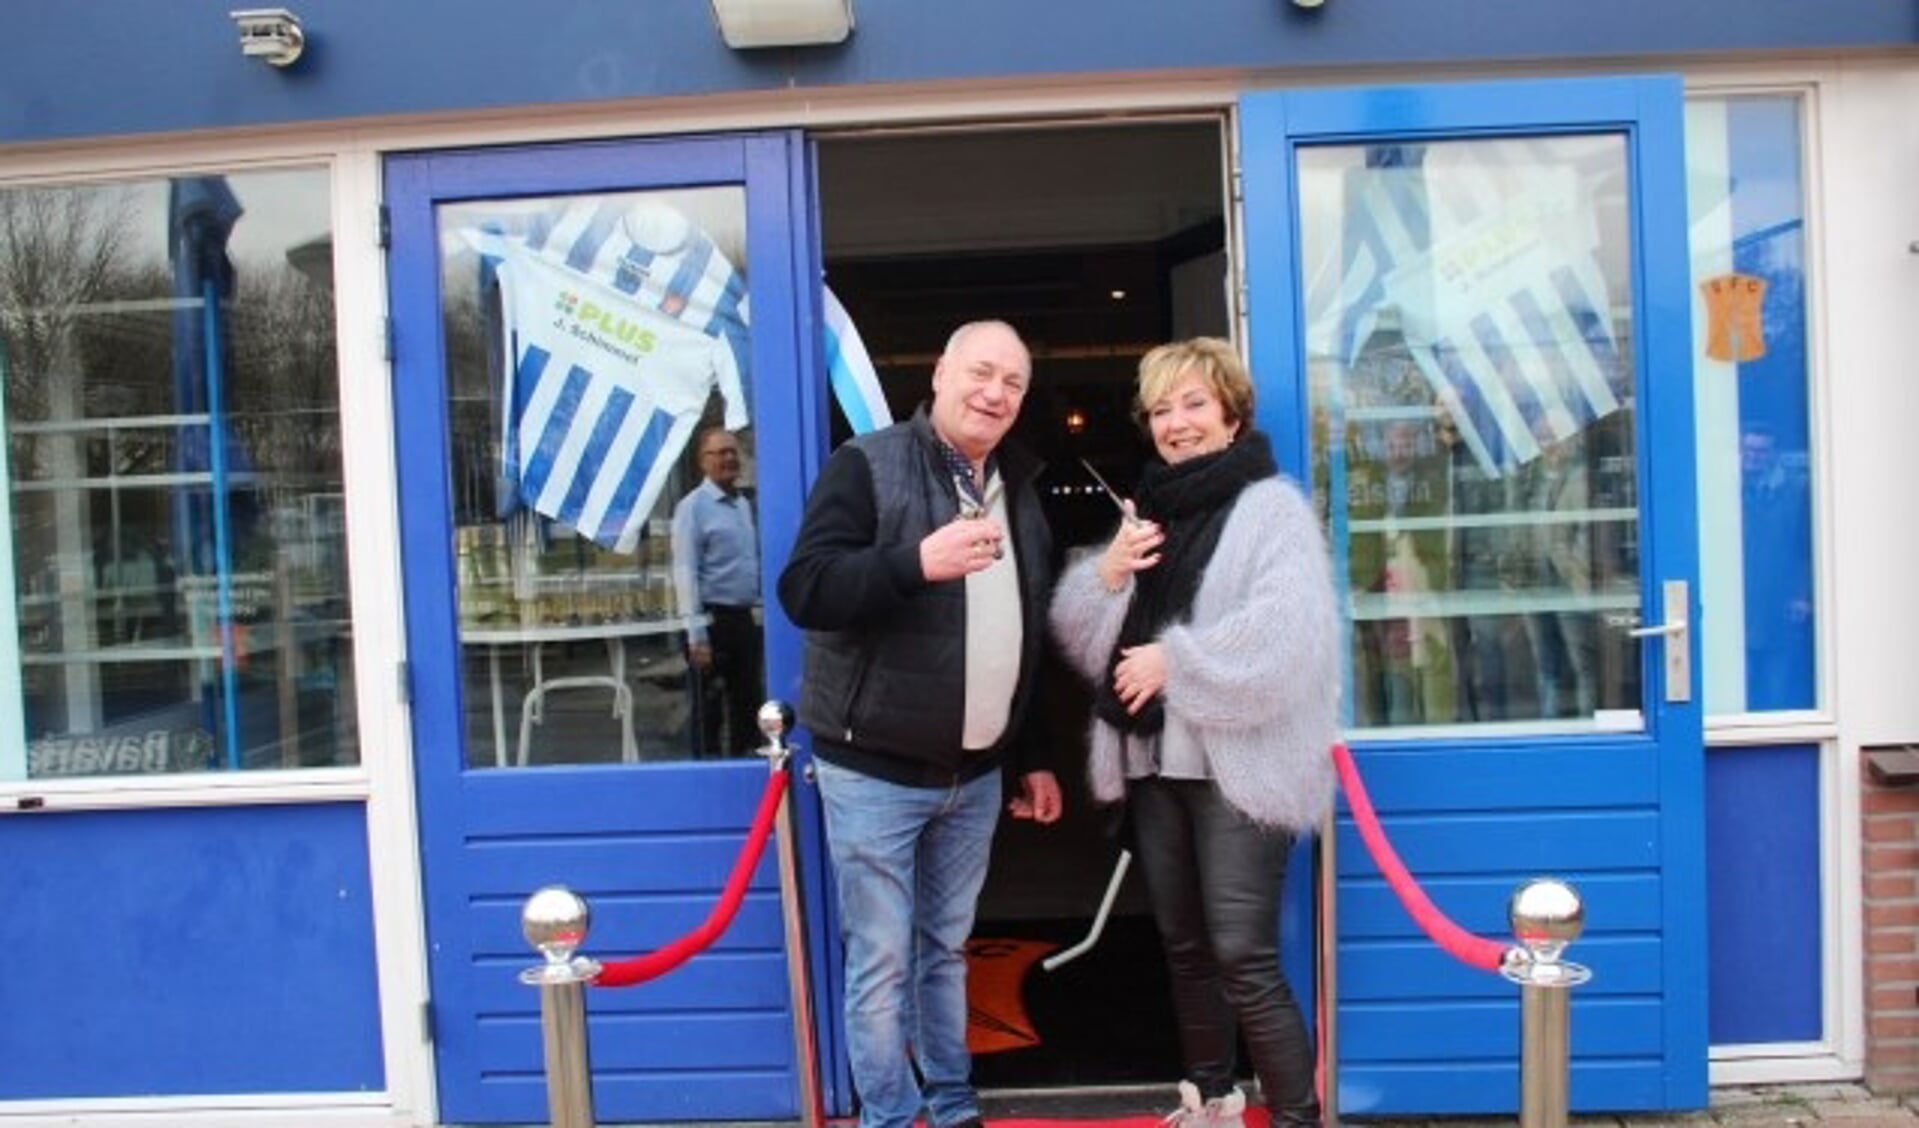 Jaap en Johanna Schimmel, zeer gewaardeerde hoofdsponsors van IJFC, knipten het lint door en mochten als eersten het vernieuwde ‘home’ van IJFC betreden. (Foto: Lysette Verwegen)